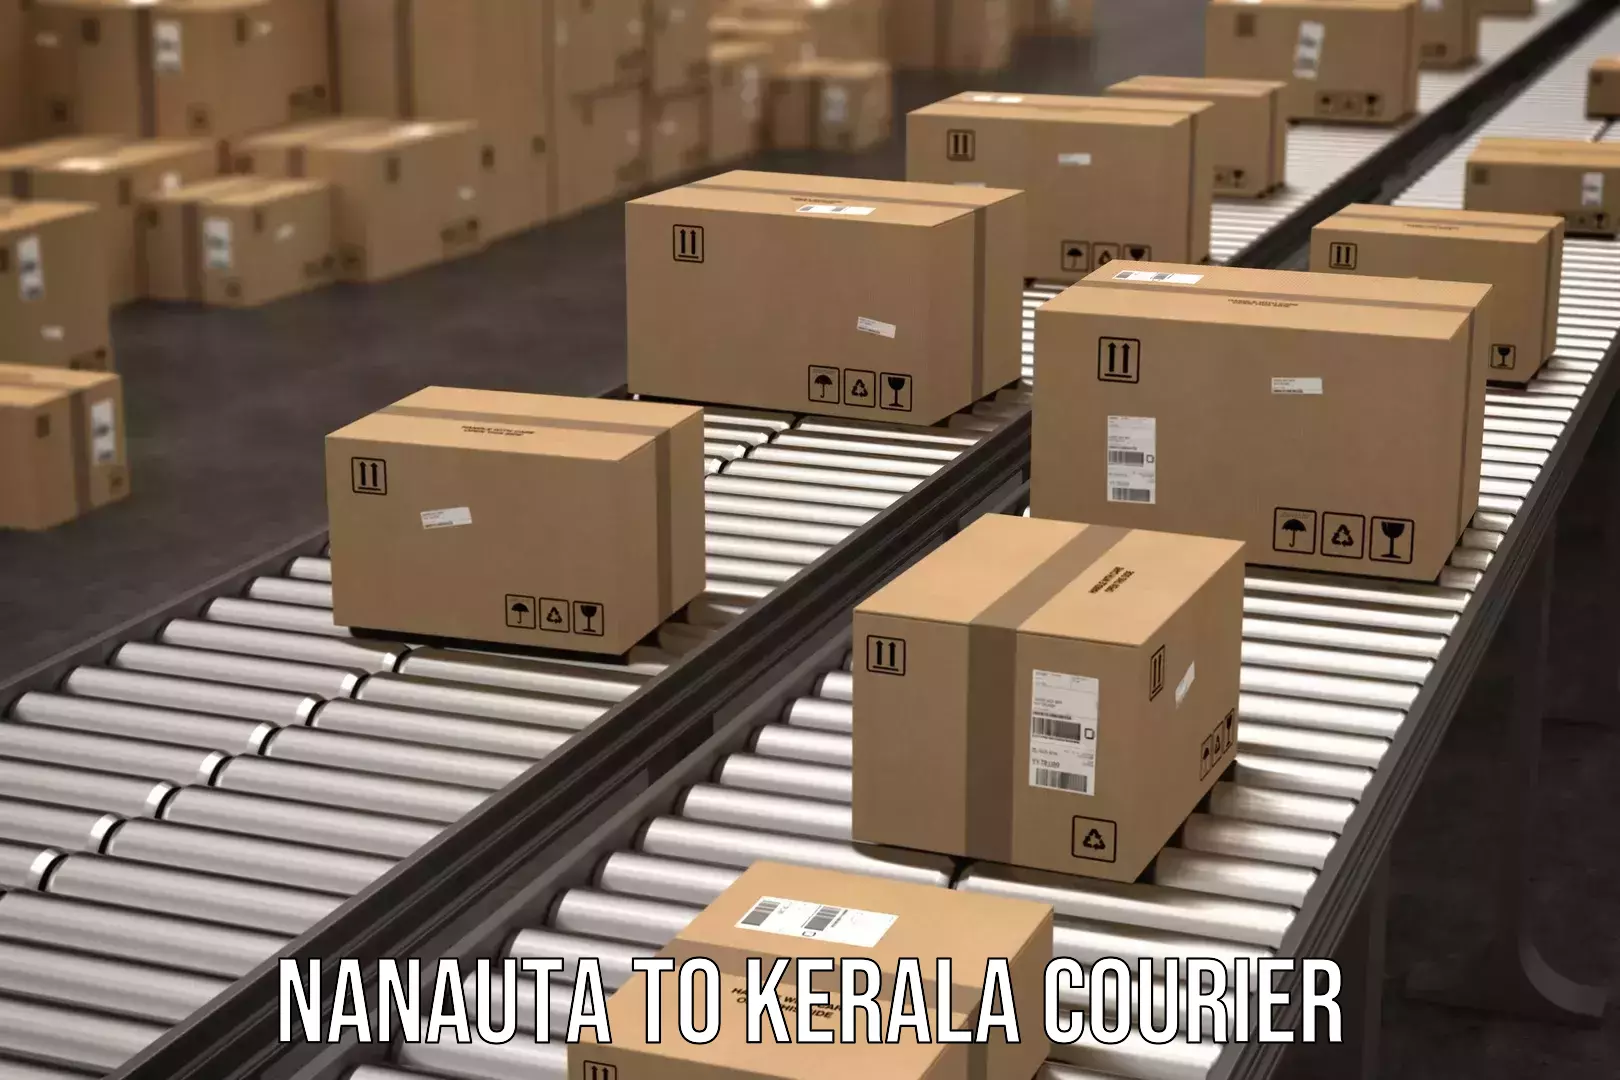 Efficient freight transportation Nanauta to IIIT Kottayam